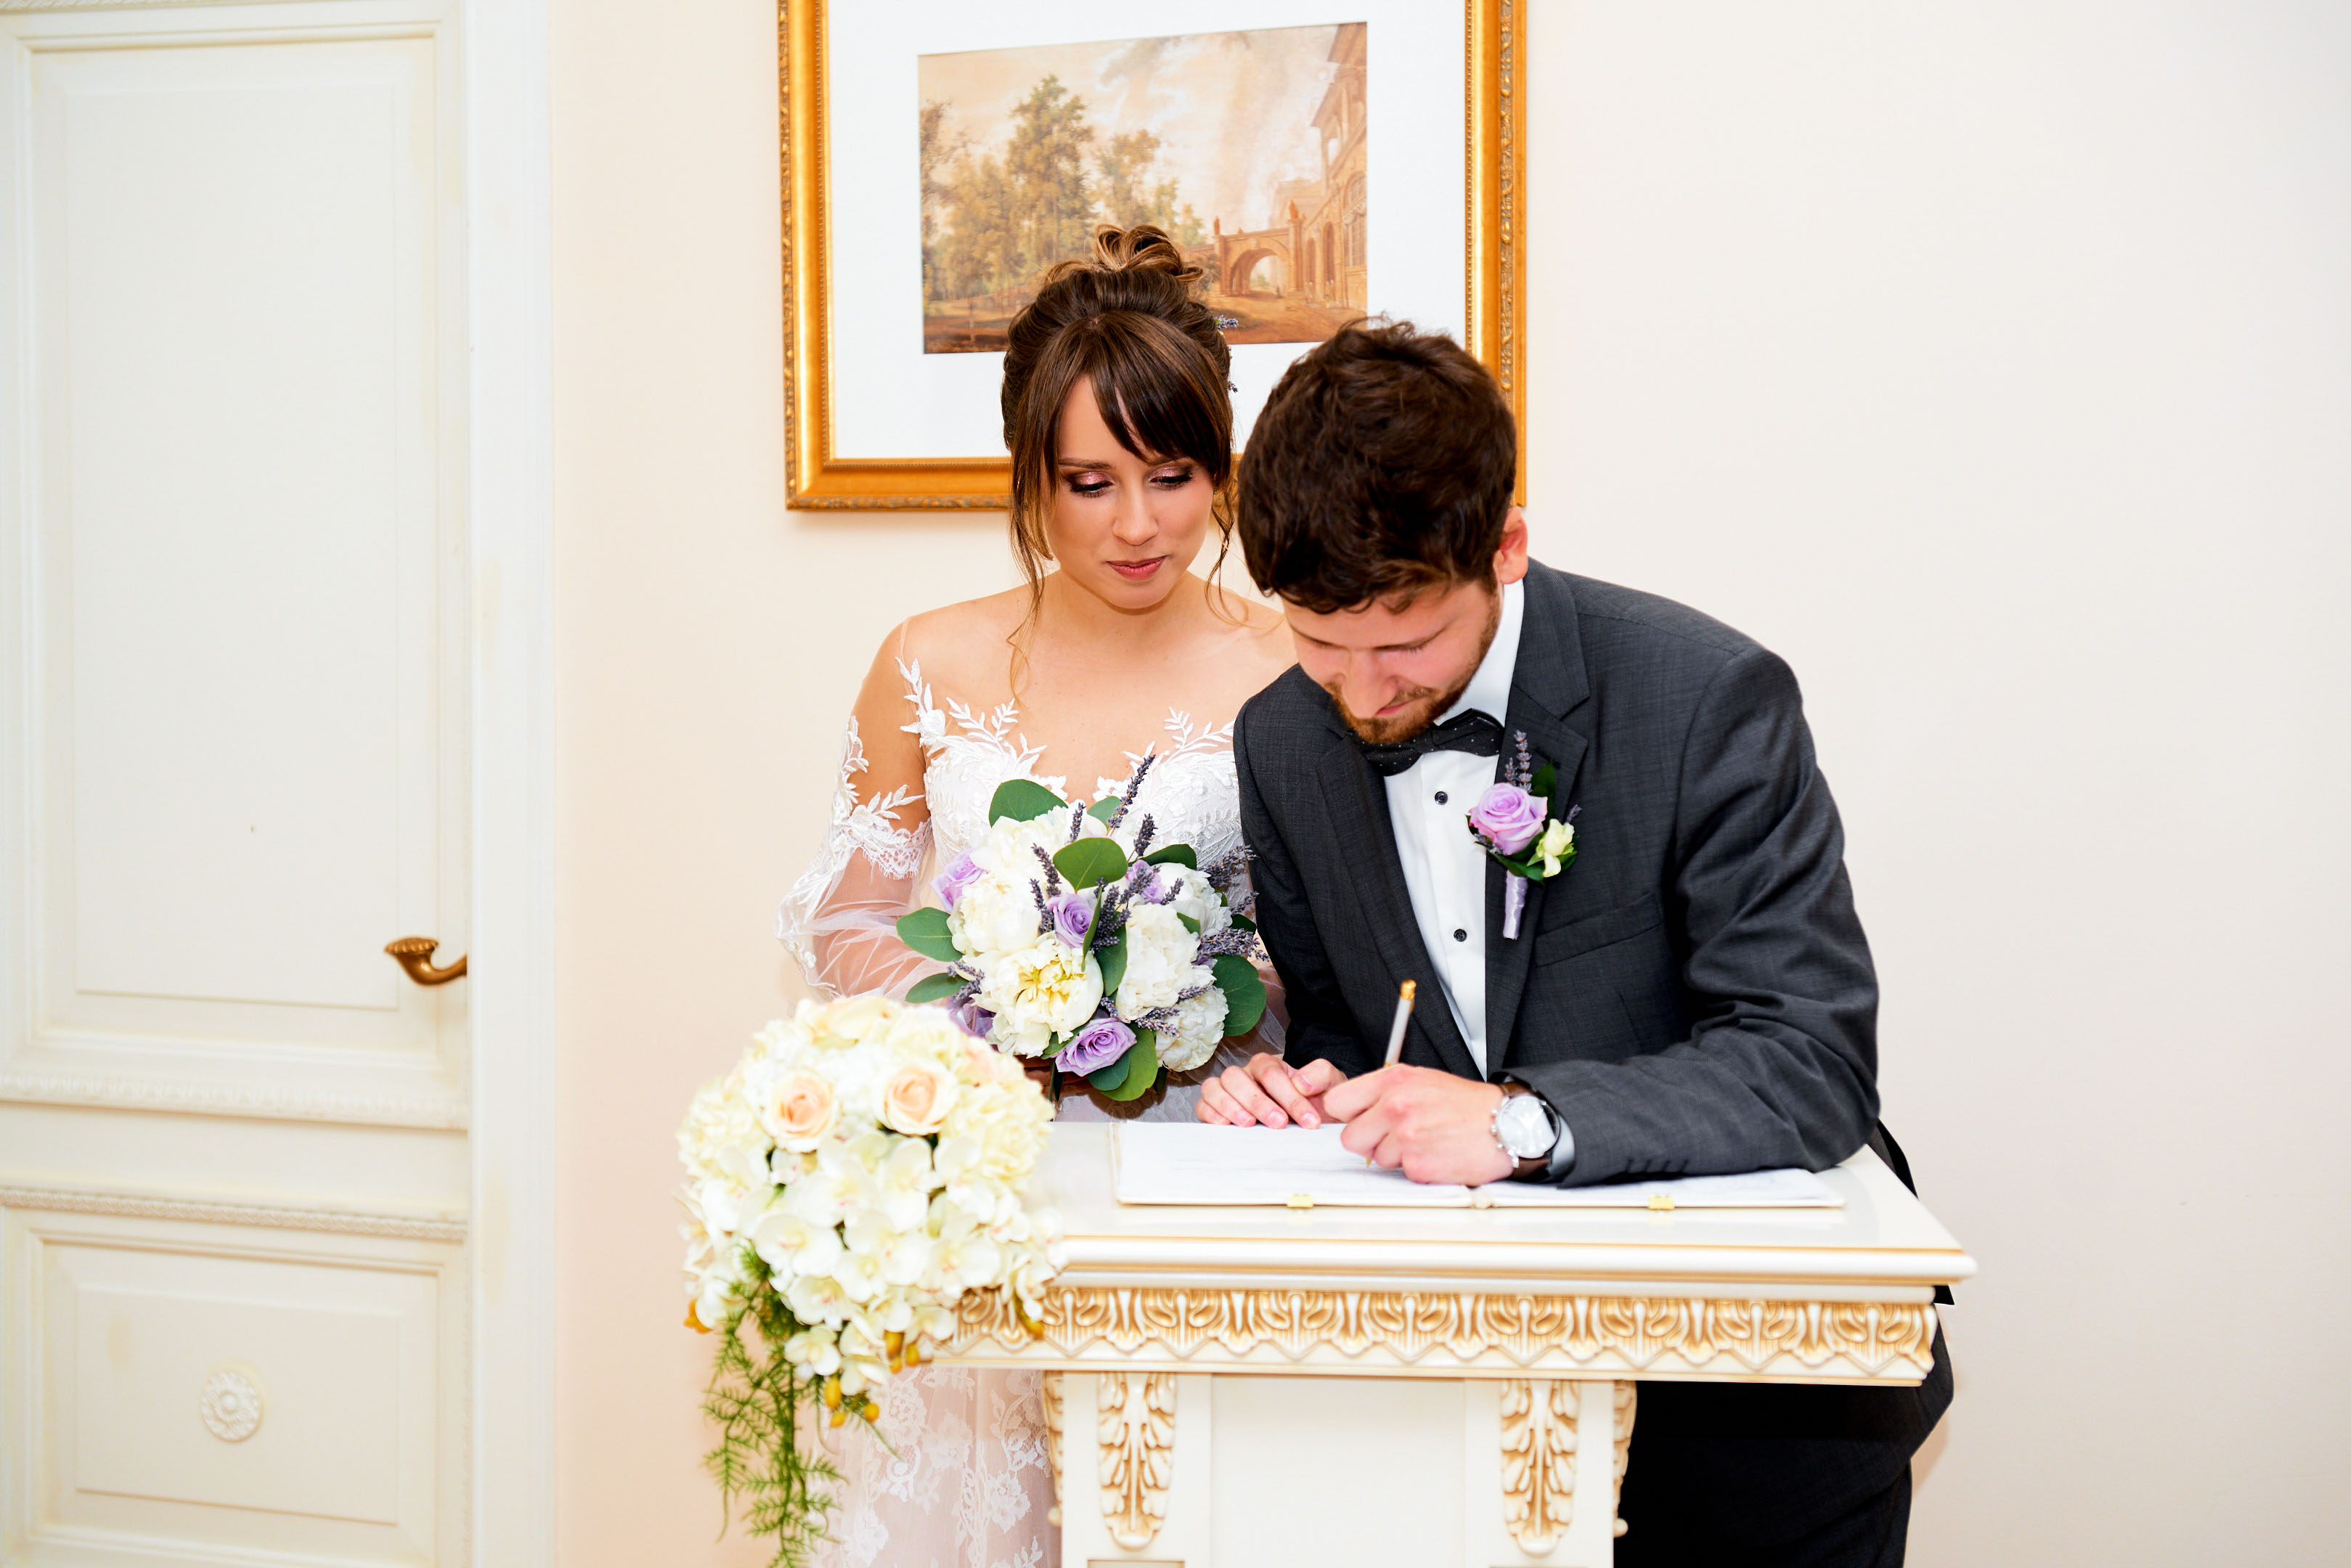 Свадебная фотосессия в Пушкине, торжественная регистрация во дворце бракосочетания №3 свадебный фотограф Пушкин